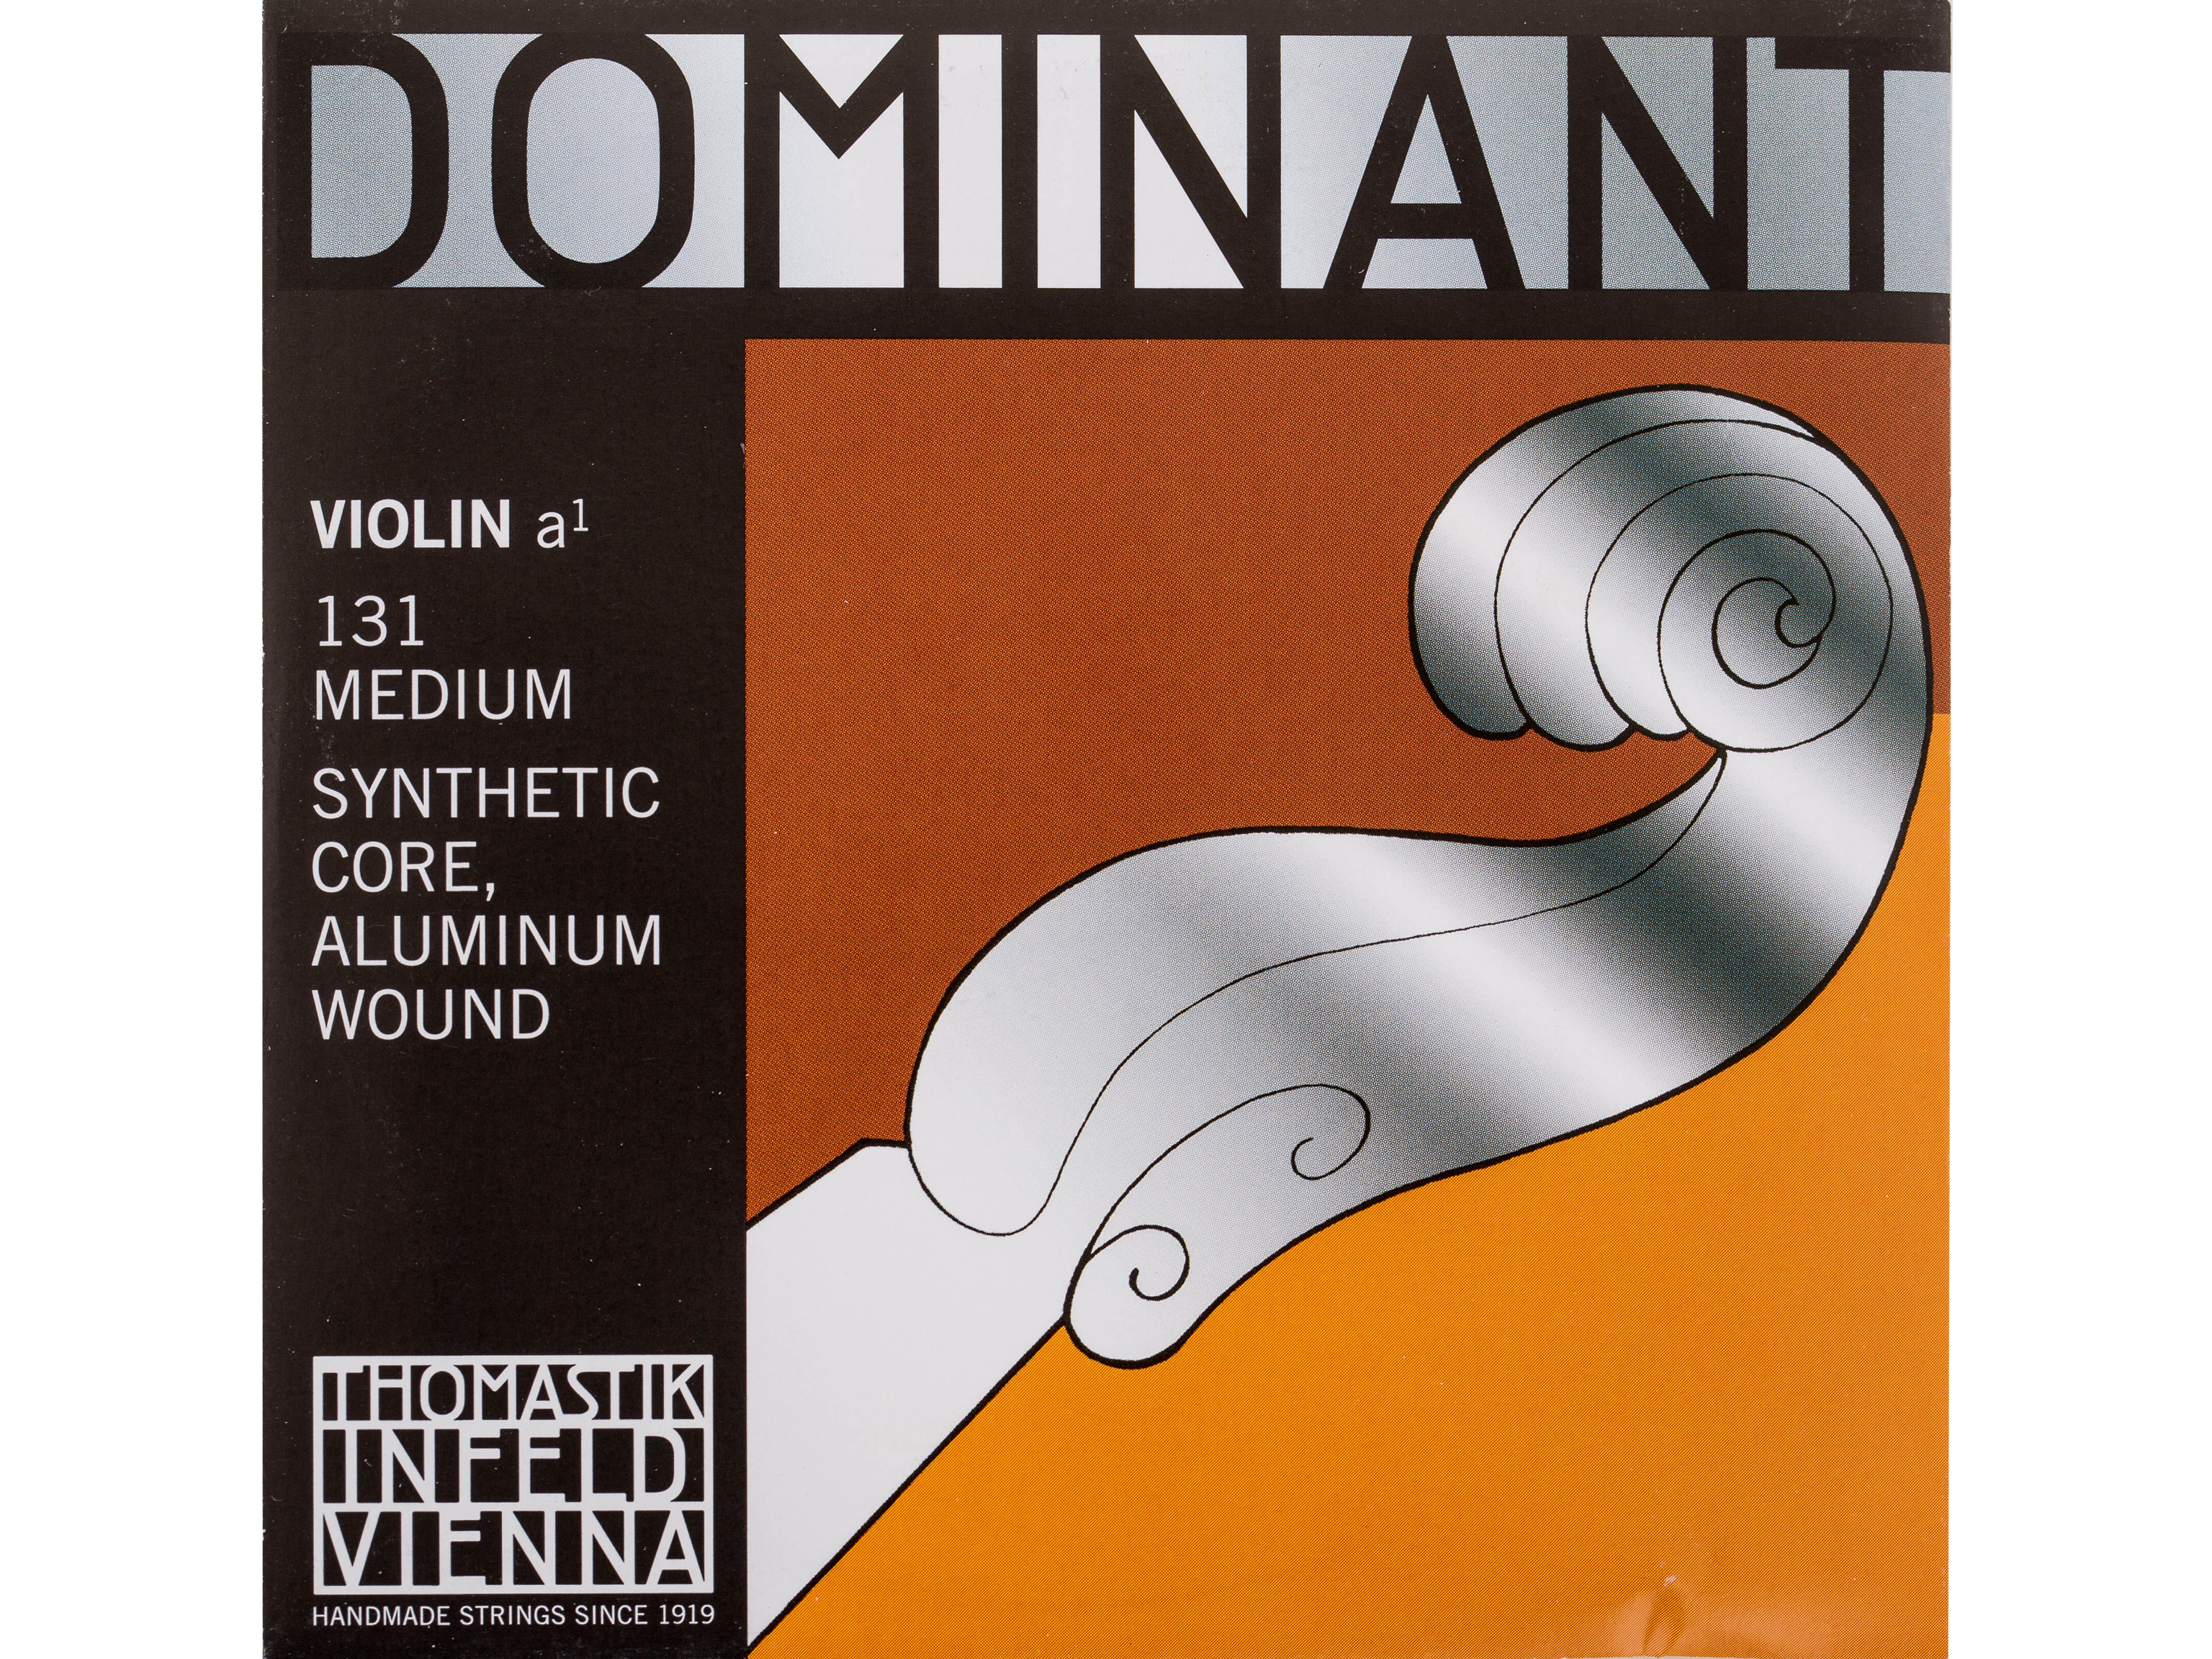 Thomastik 131 a` Violinsaite 4/4 Dominant